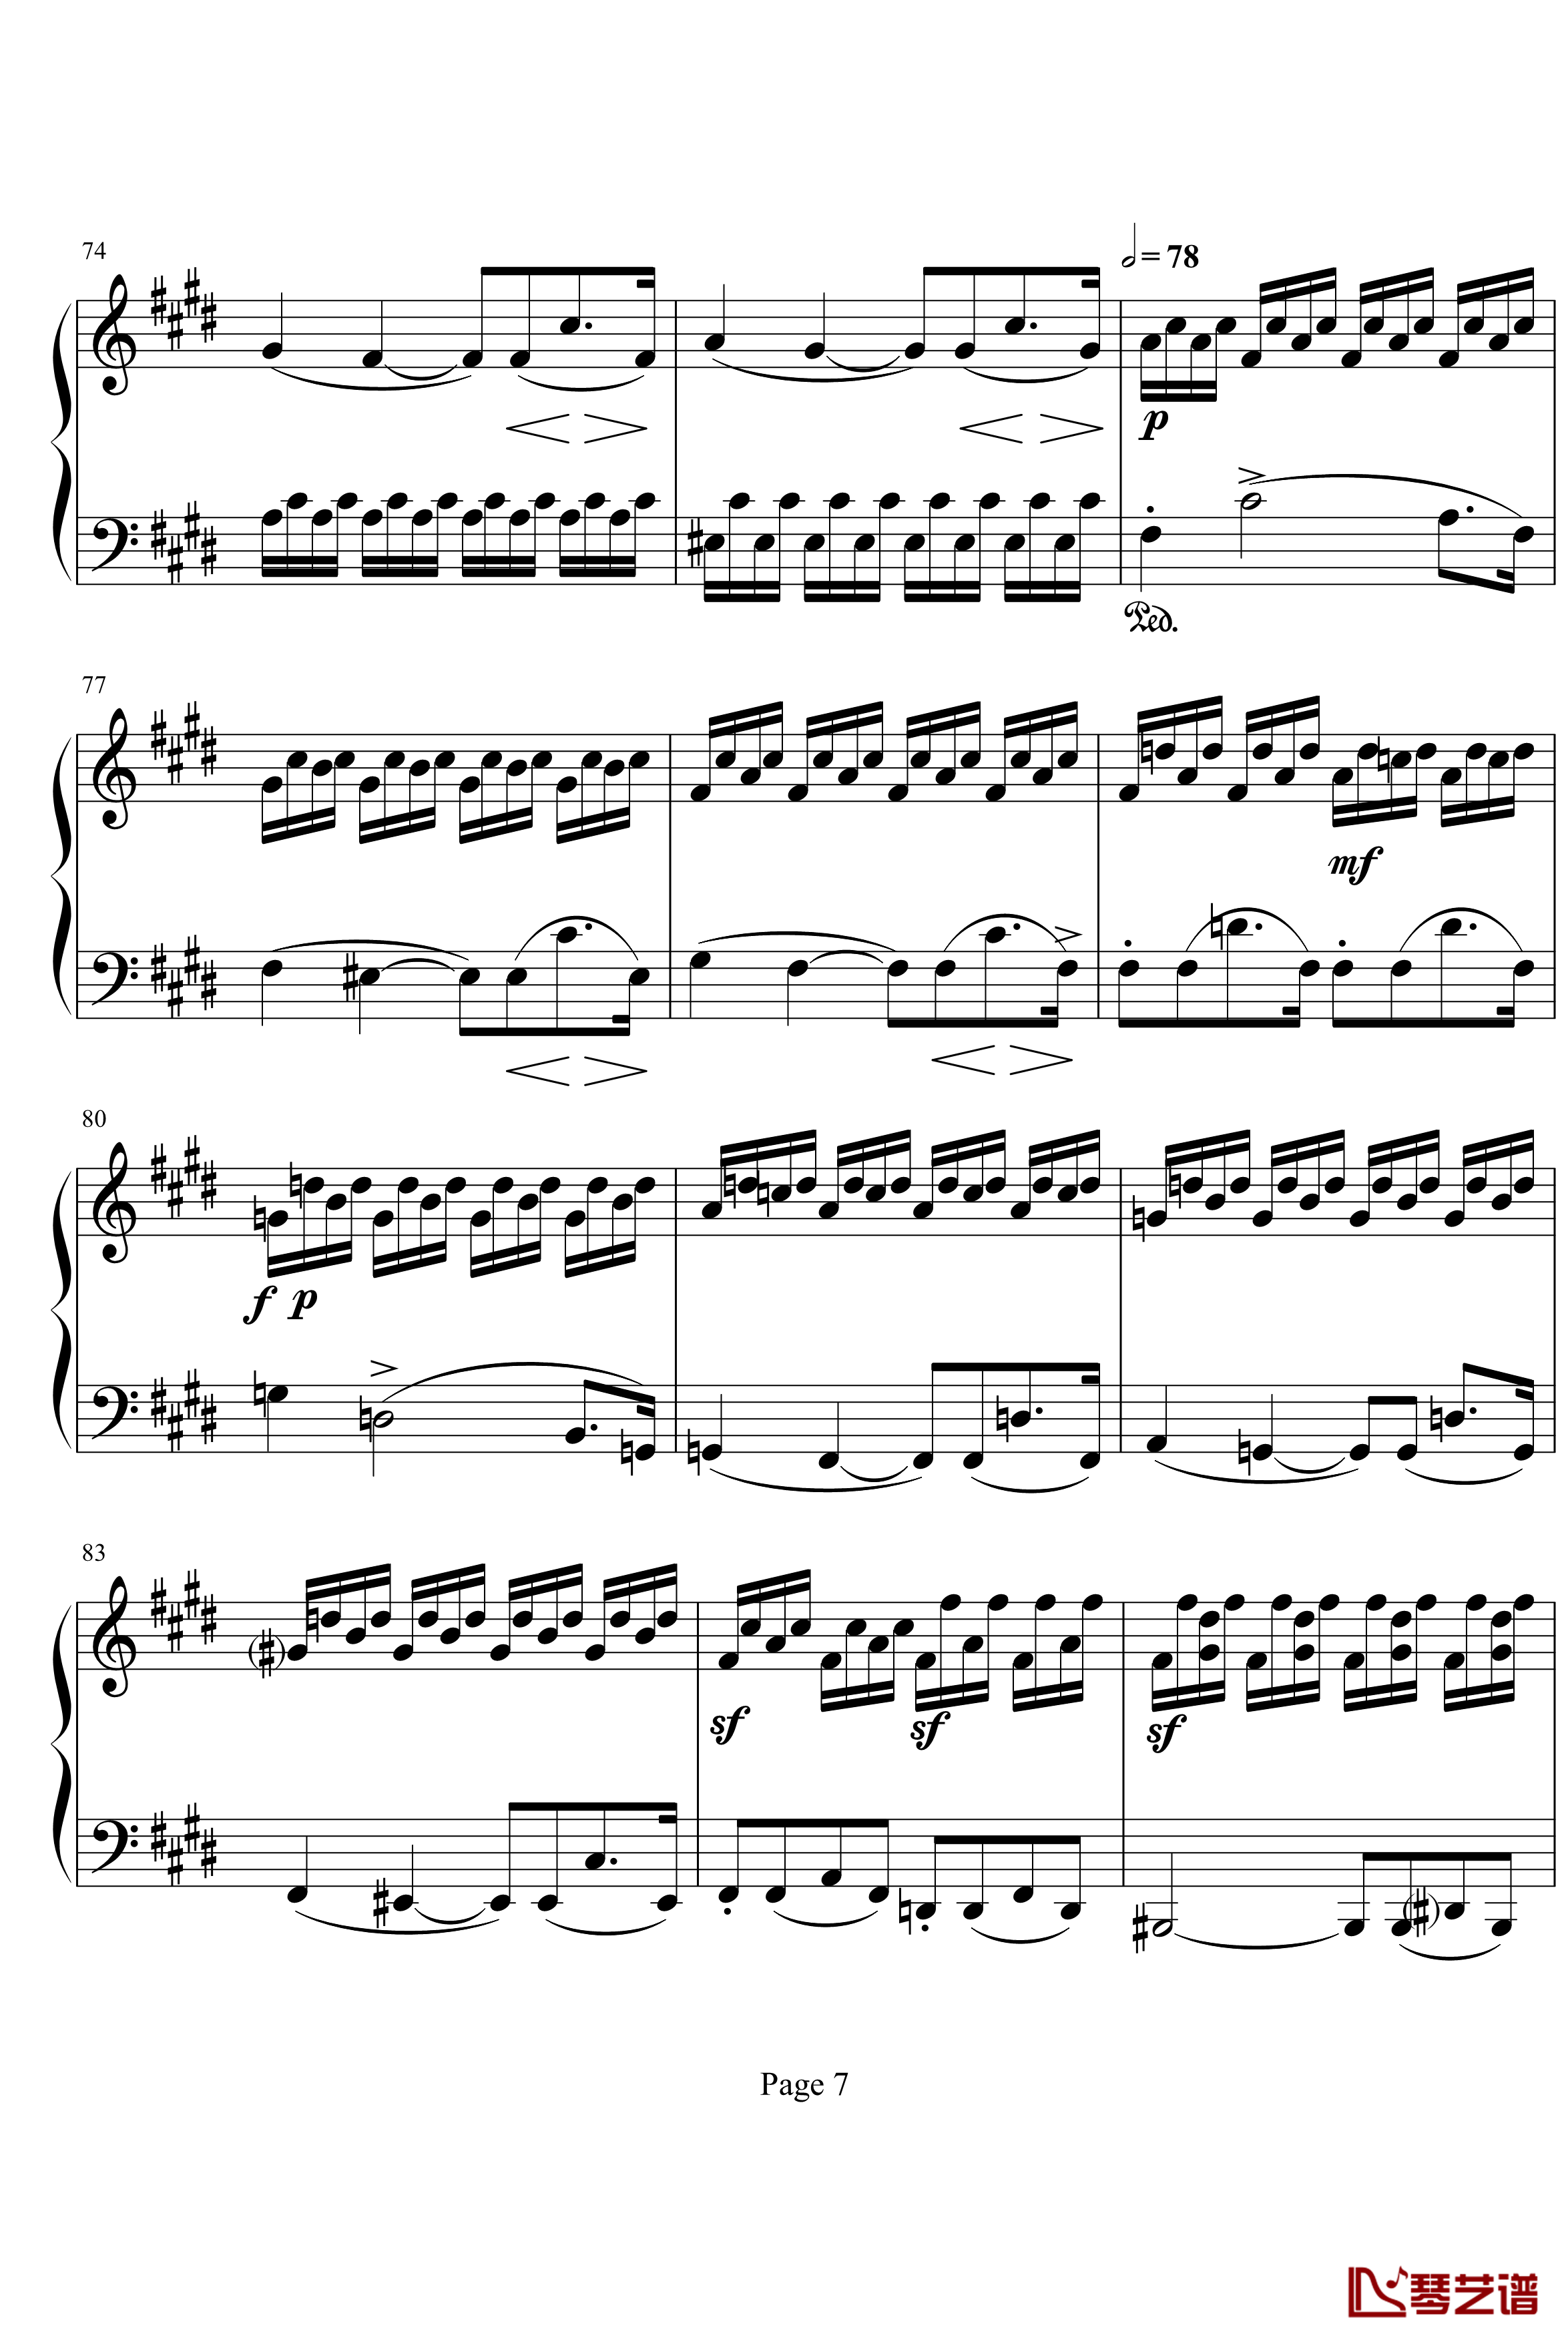 月光奏明曲钢琴谱-作品27之2-贝多芬-beethoven7